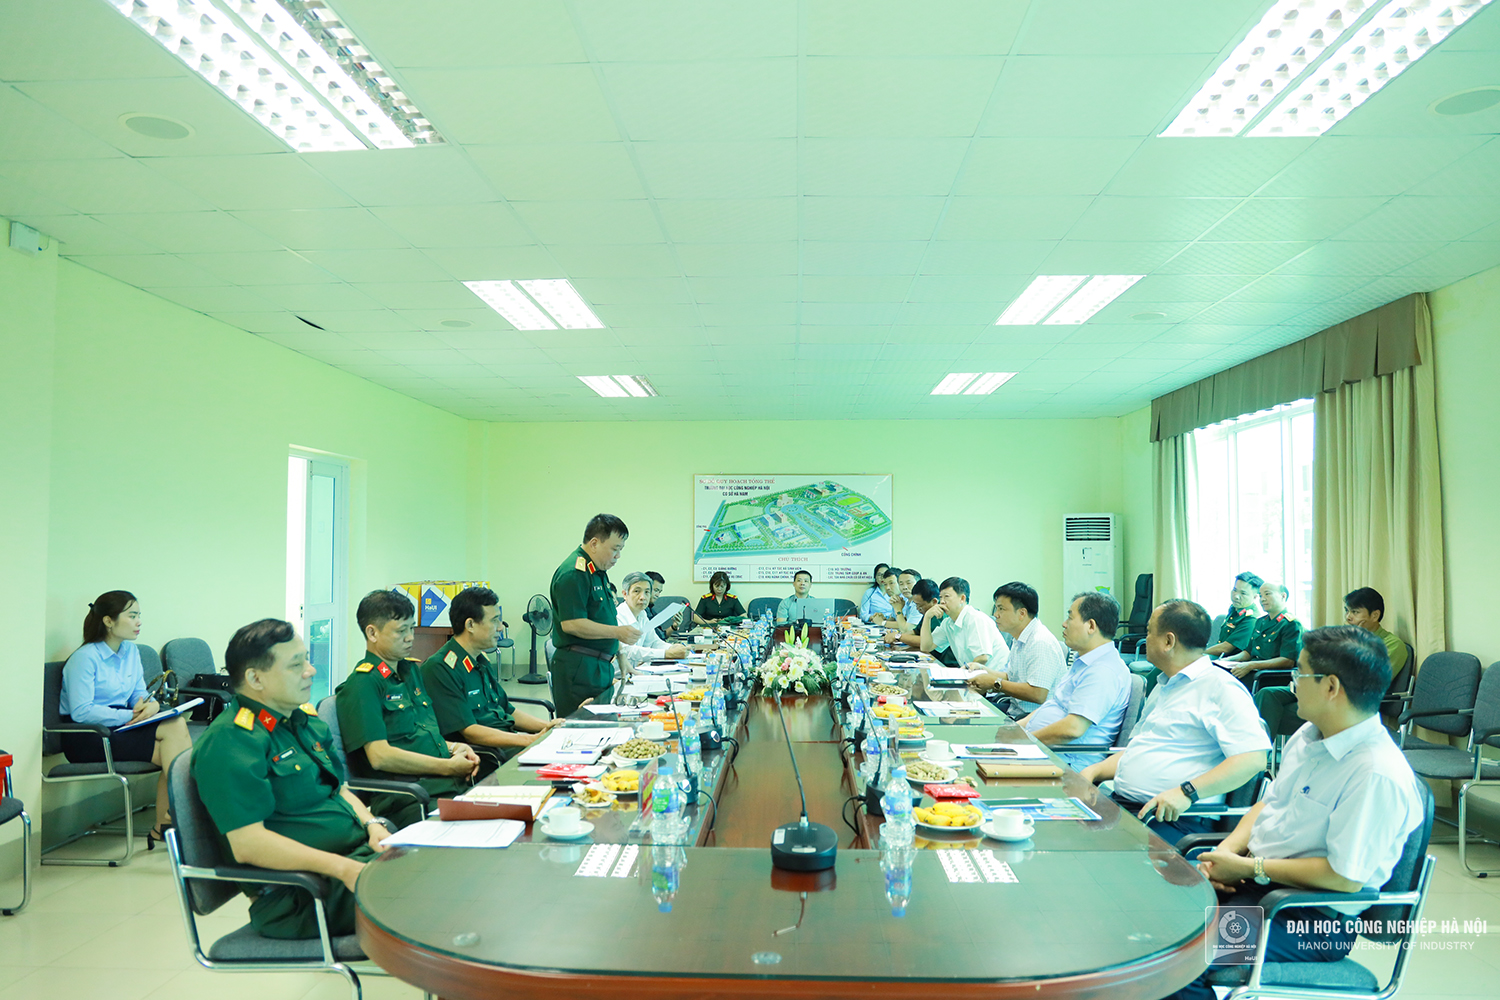 Trung tâm Quốc phòng An ninh, Đại học Công nghiệp Hà Nội